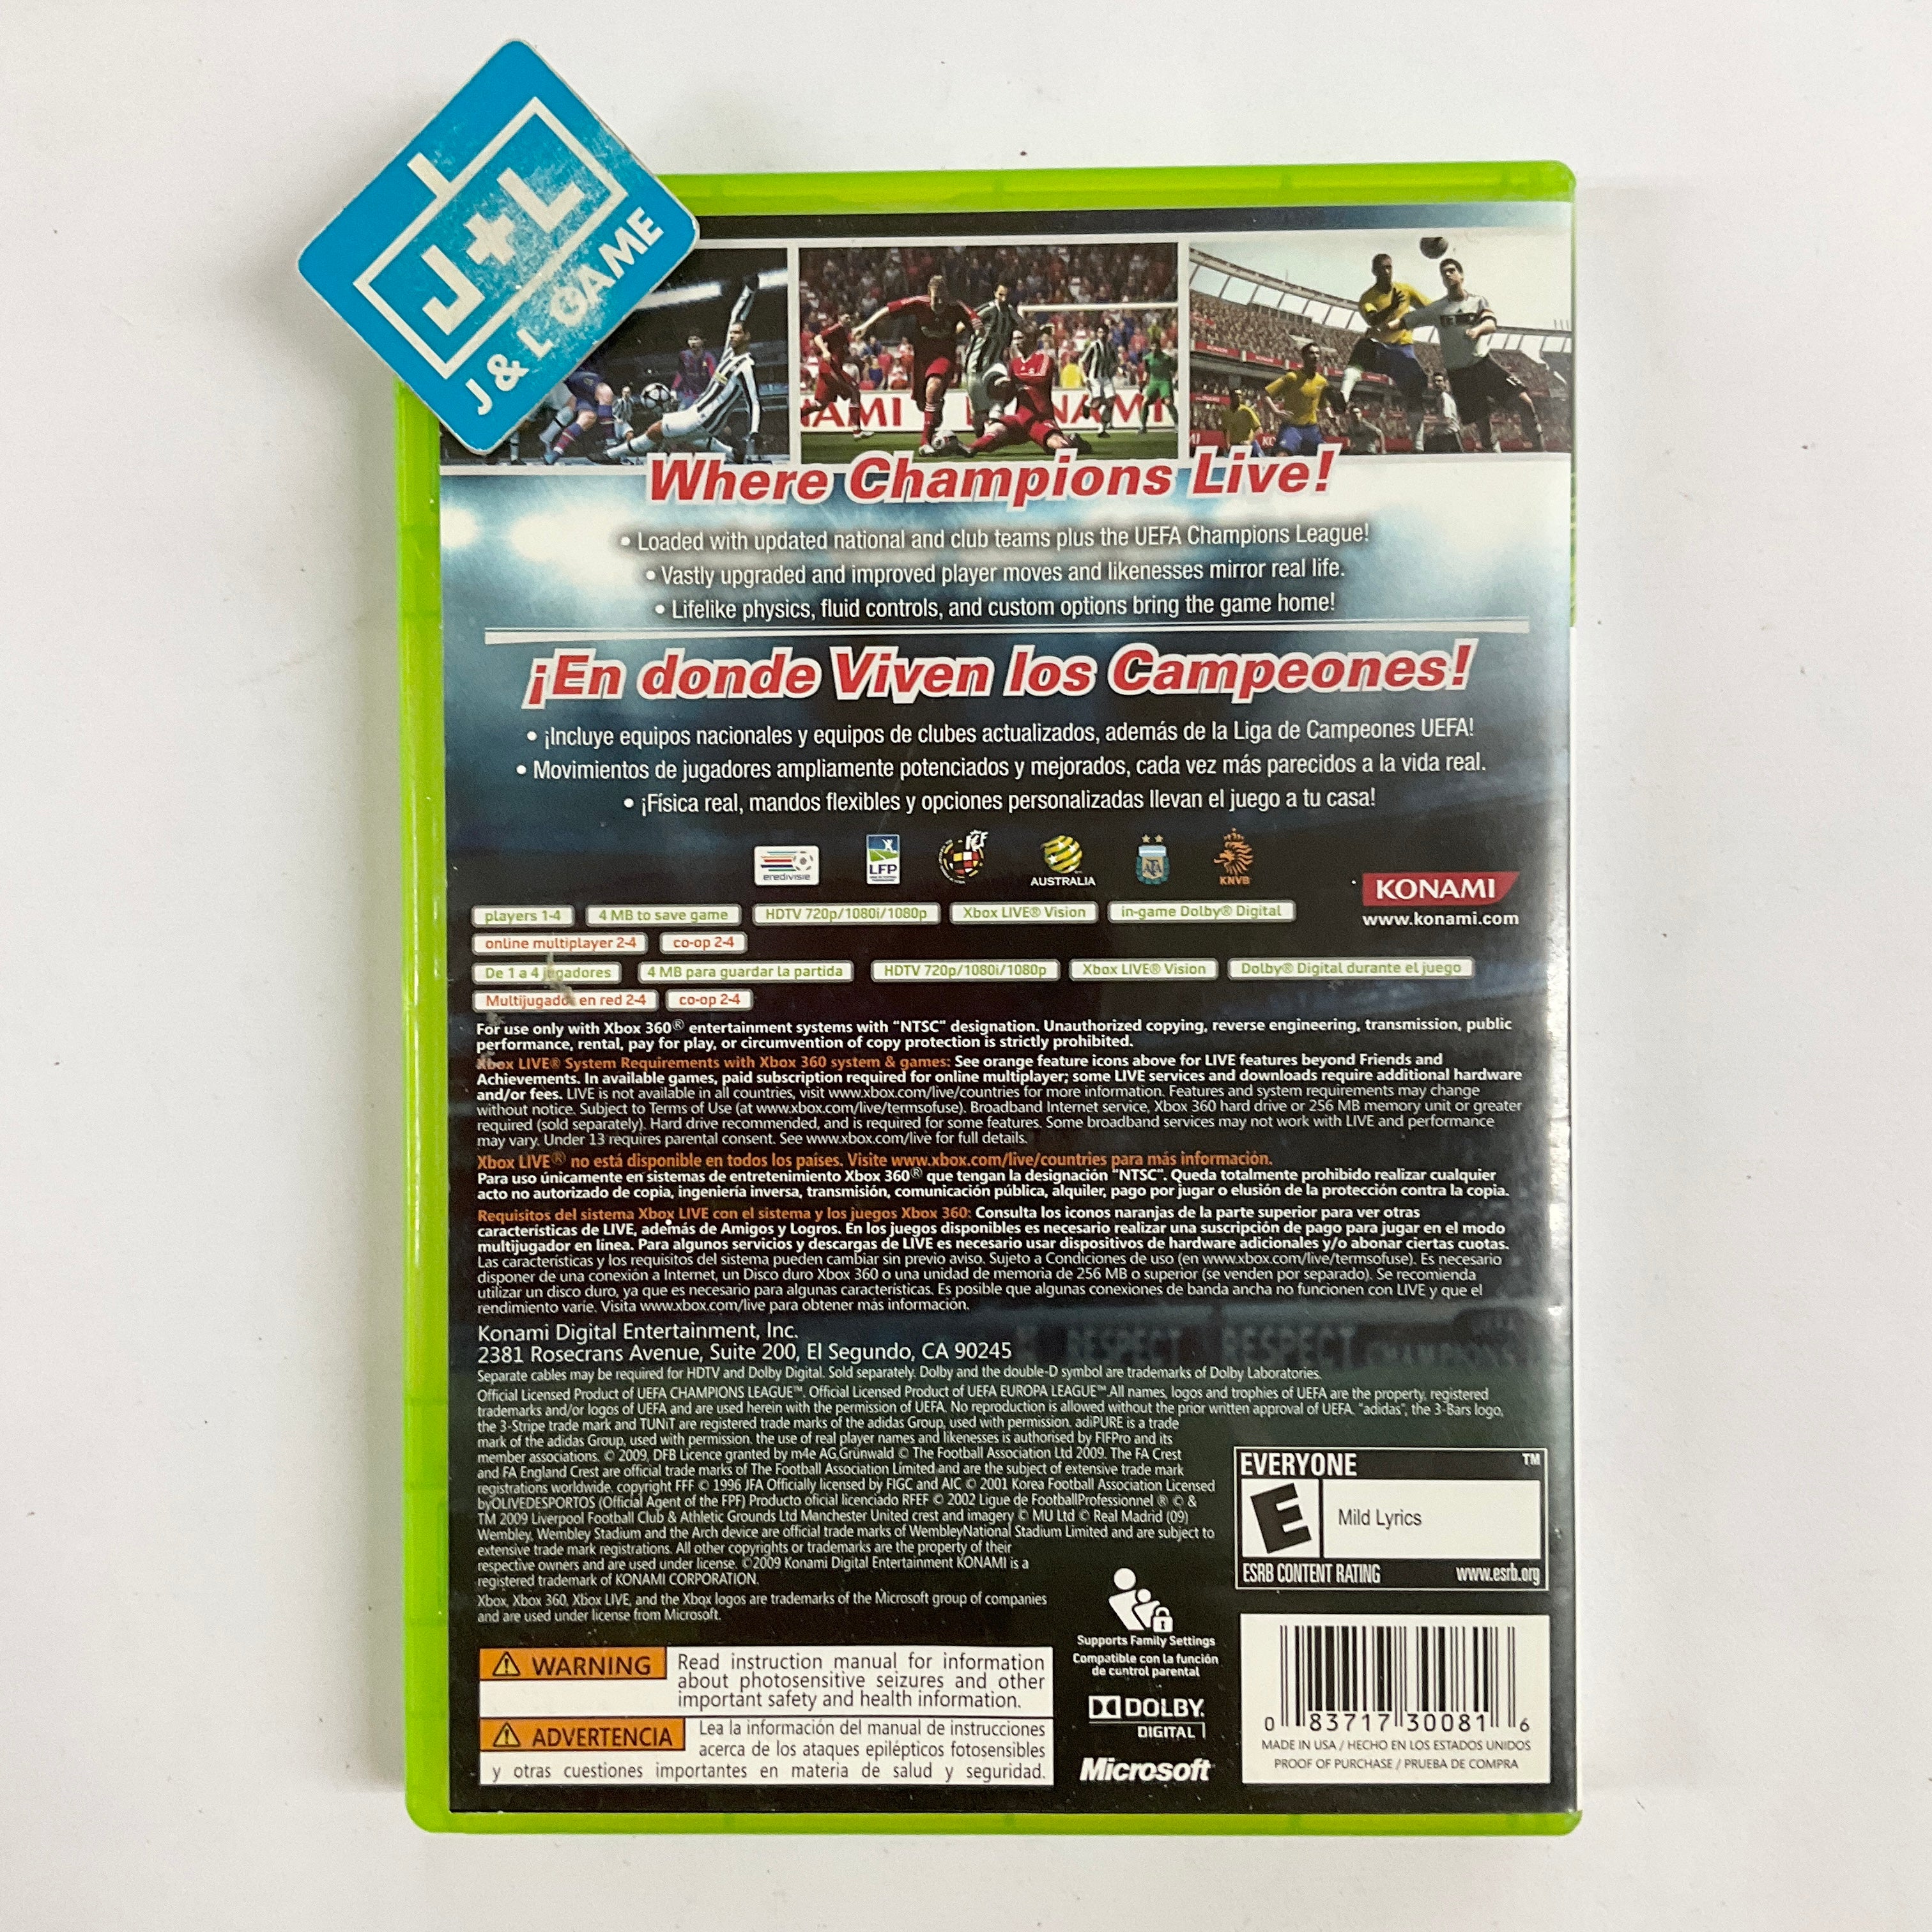 Pro Evolution Soccer 2010 - Xbox 360 [Pre-Owned] Video Games Konami   